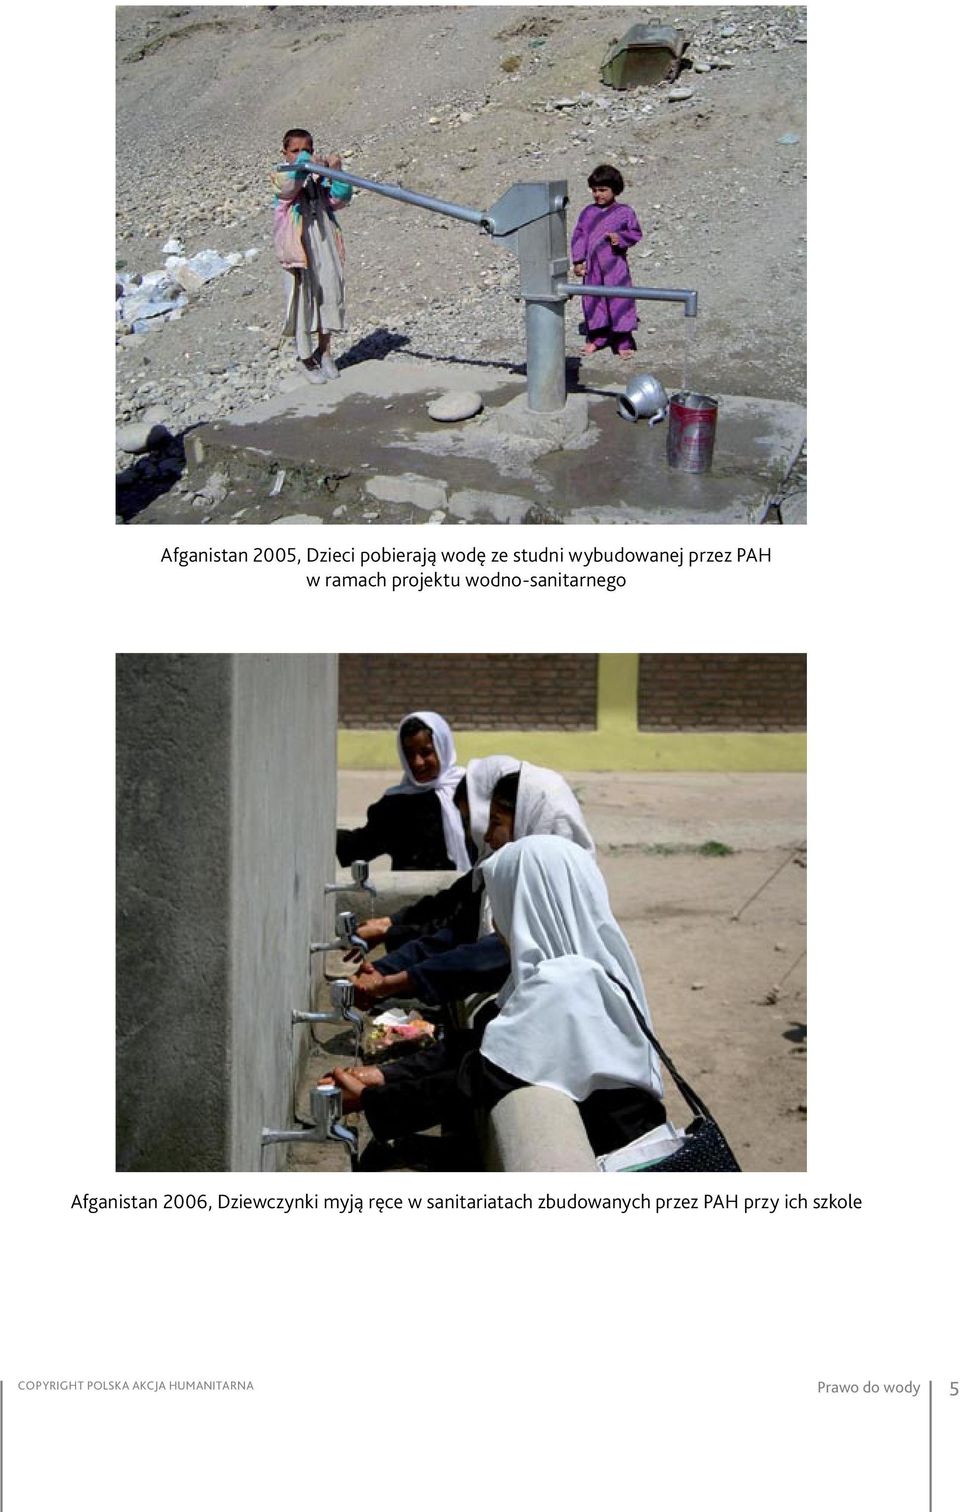 Afganistan 2006, Dziewczynki myją ręce w sanitariatach